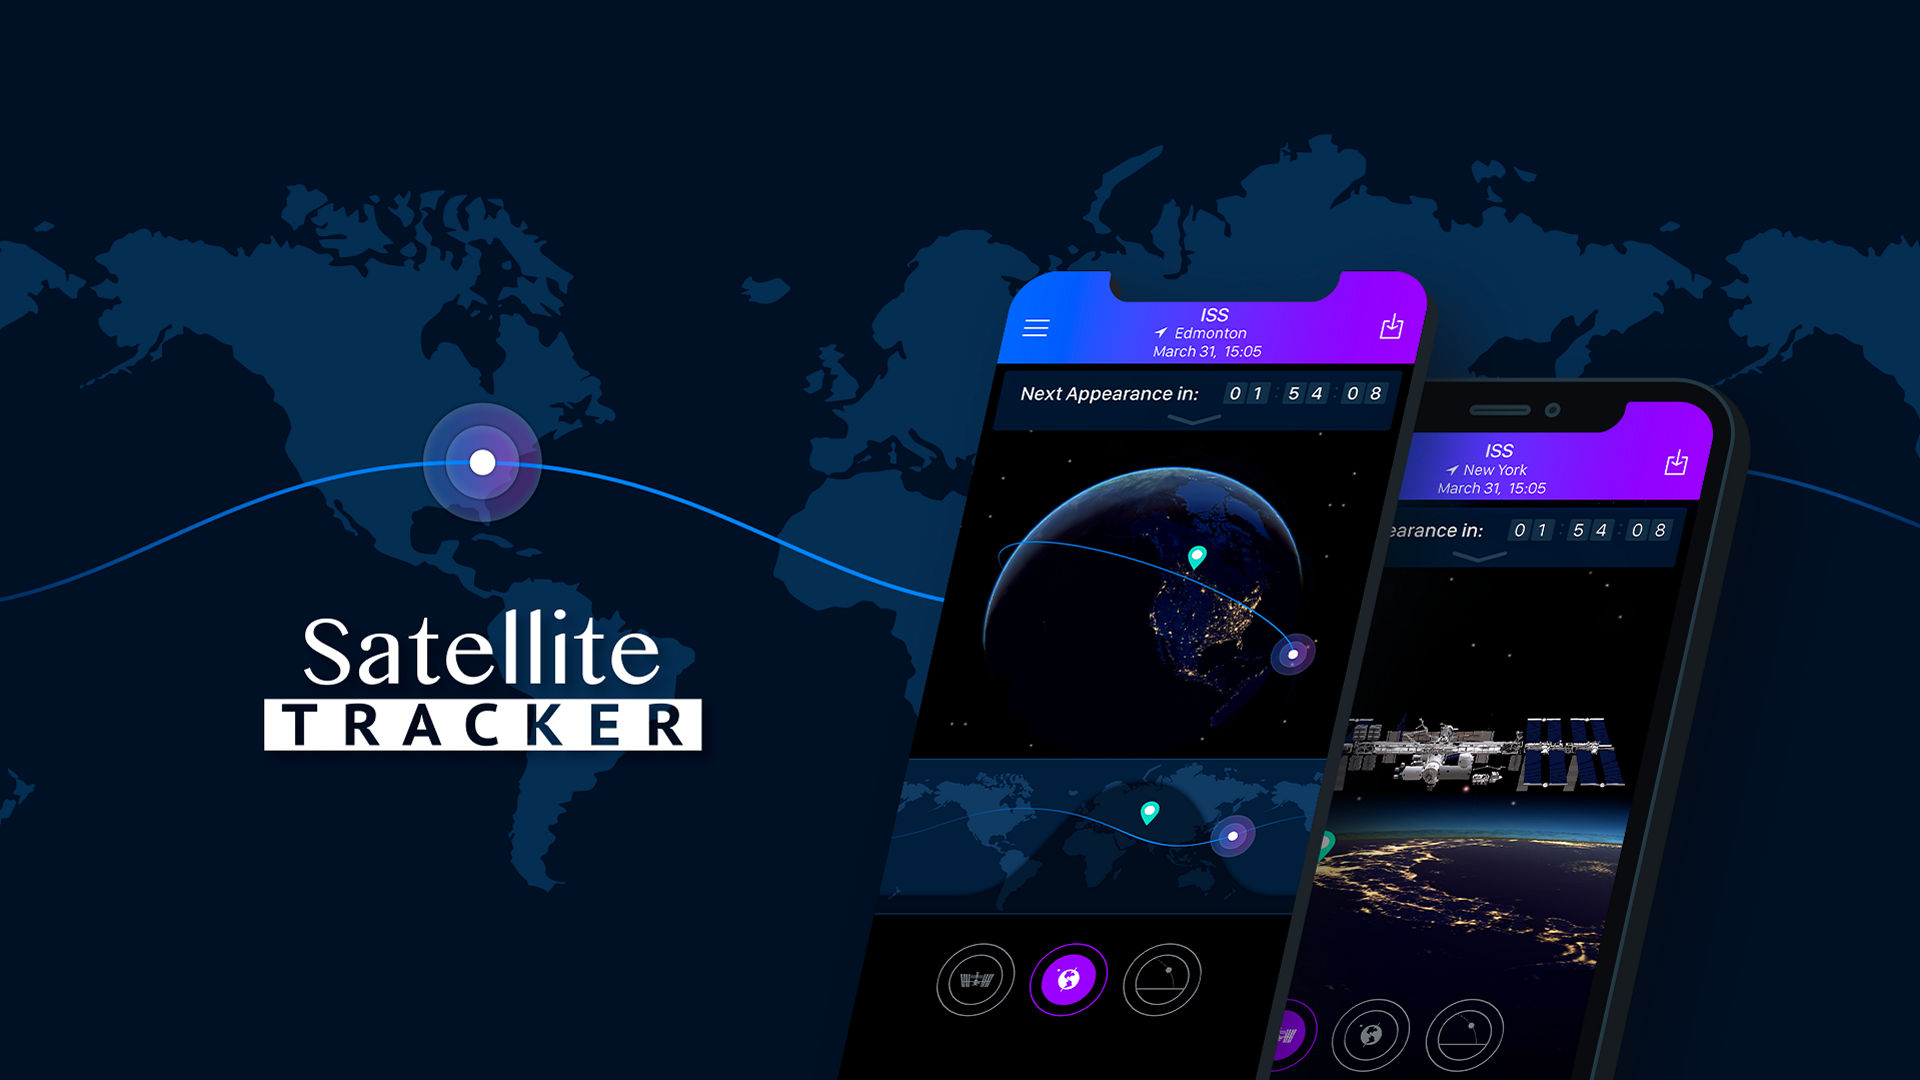 Satellite Tracker app